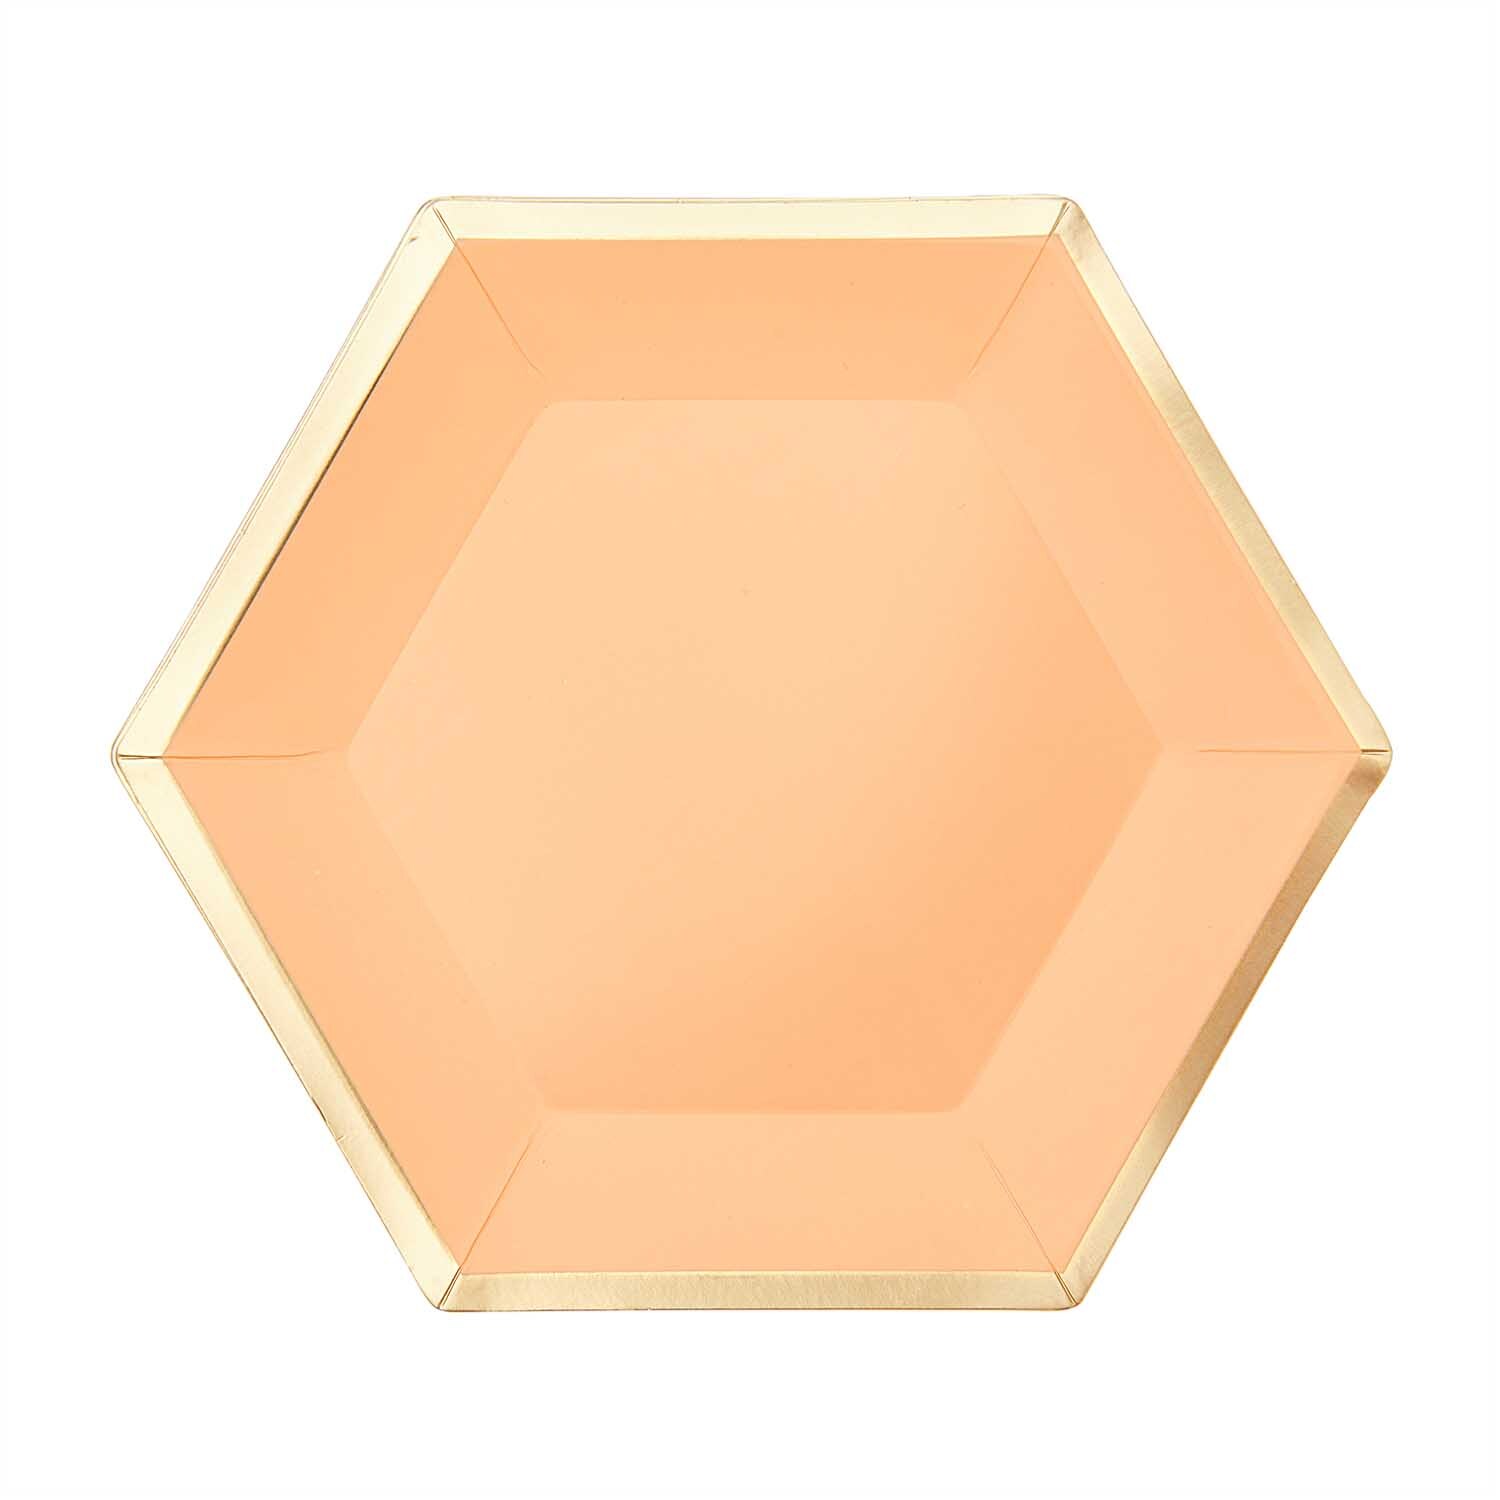 Pappteller Sechseck apricot-gold 16x13,5cm 10 Stück